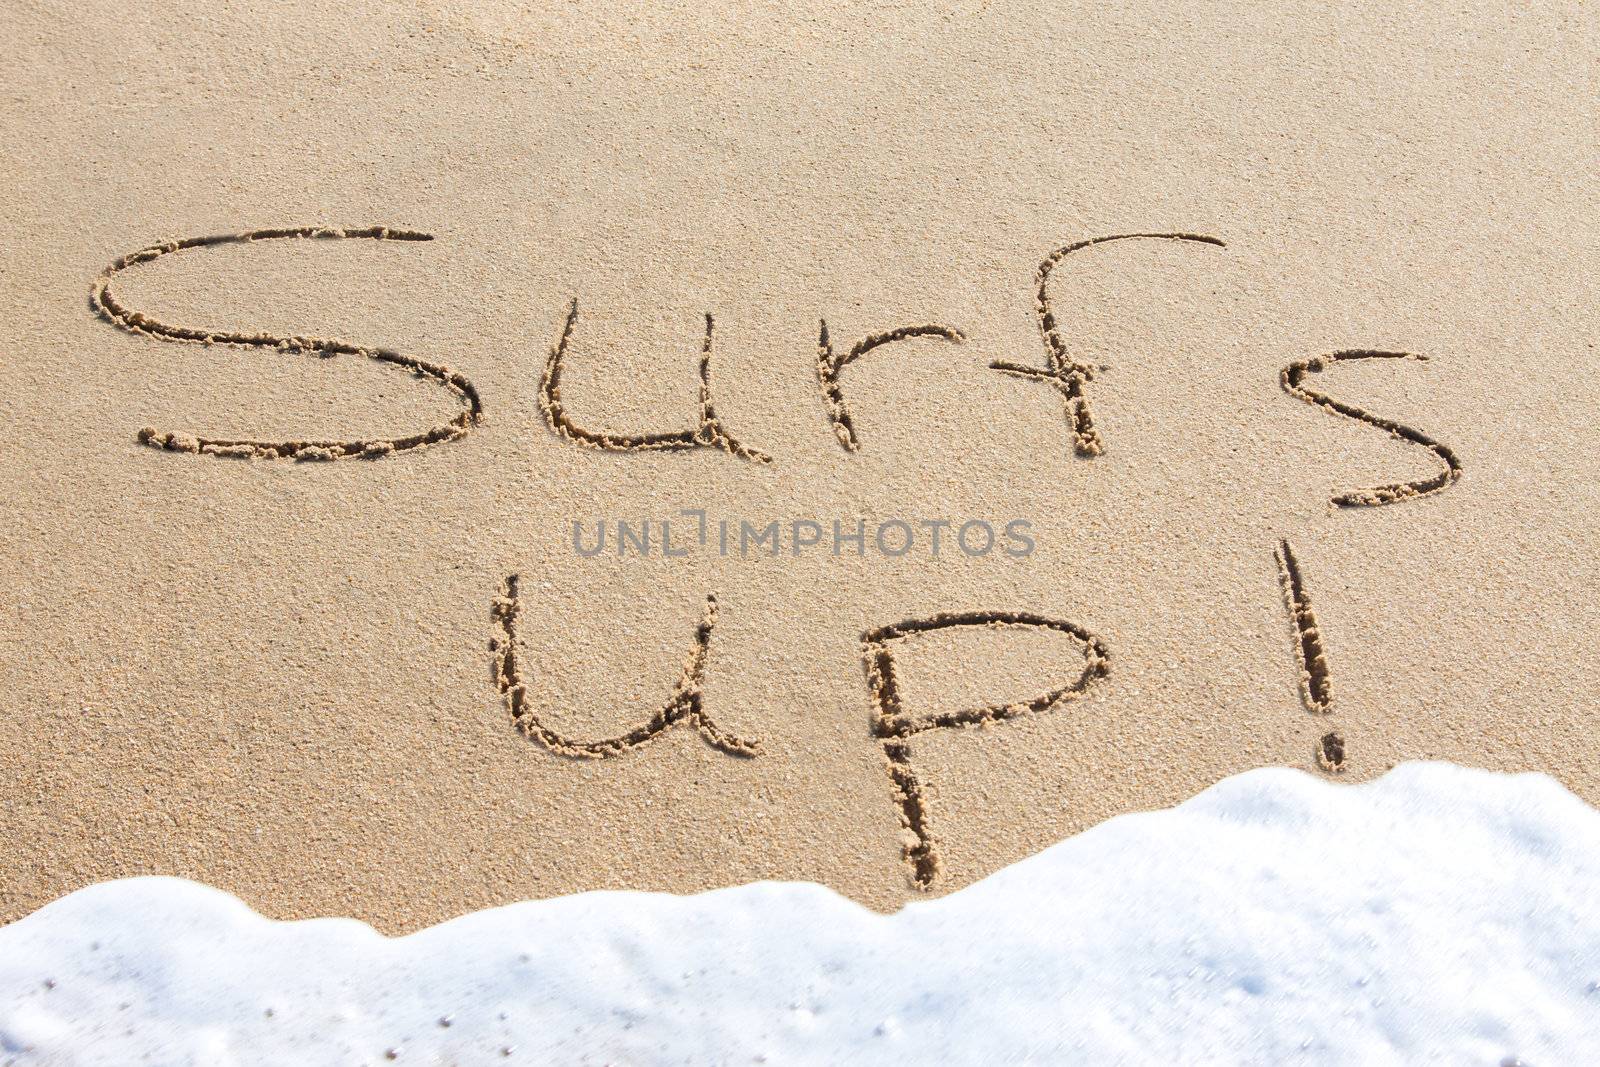 Surf's up - written in the sand by Jaykayl